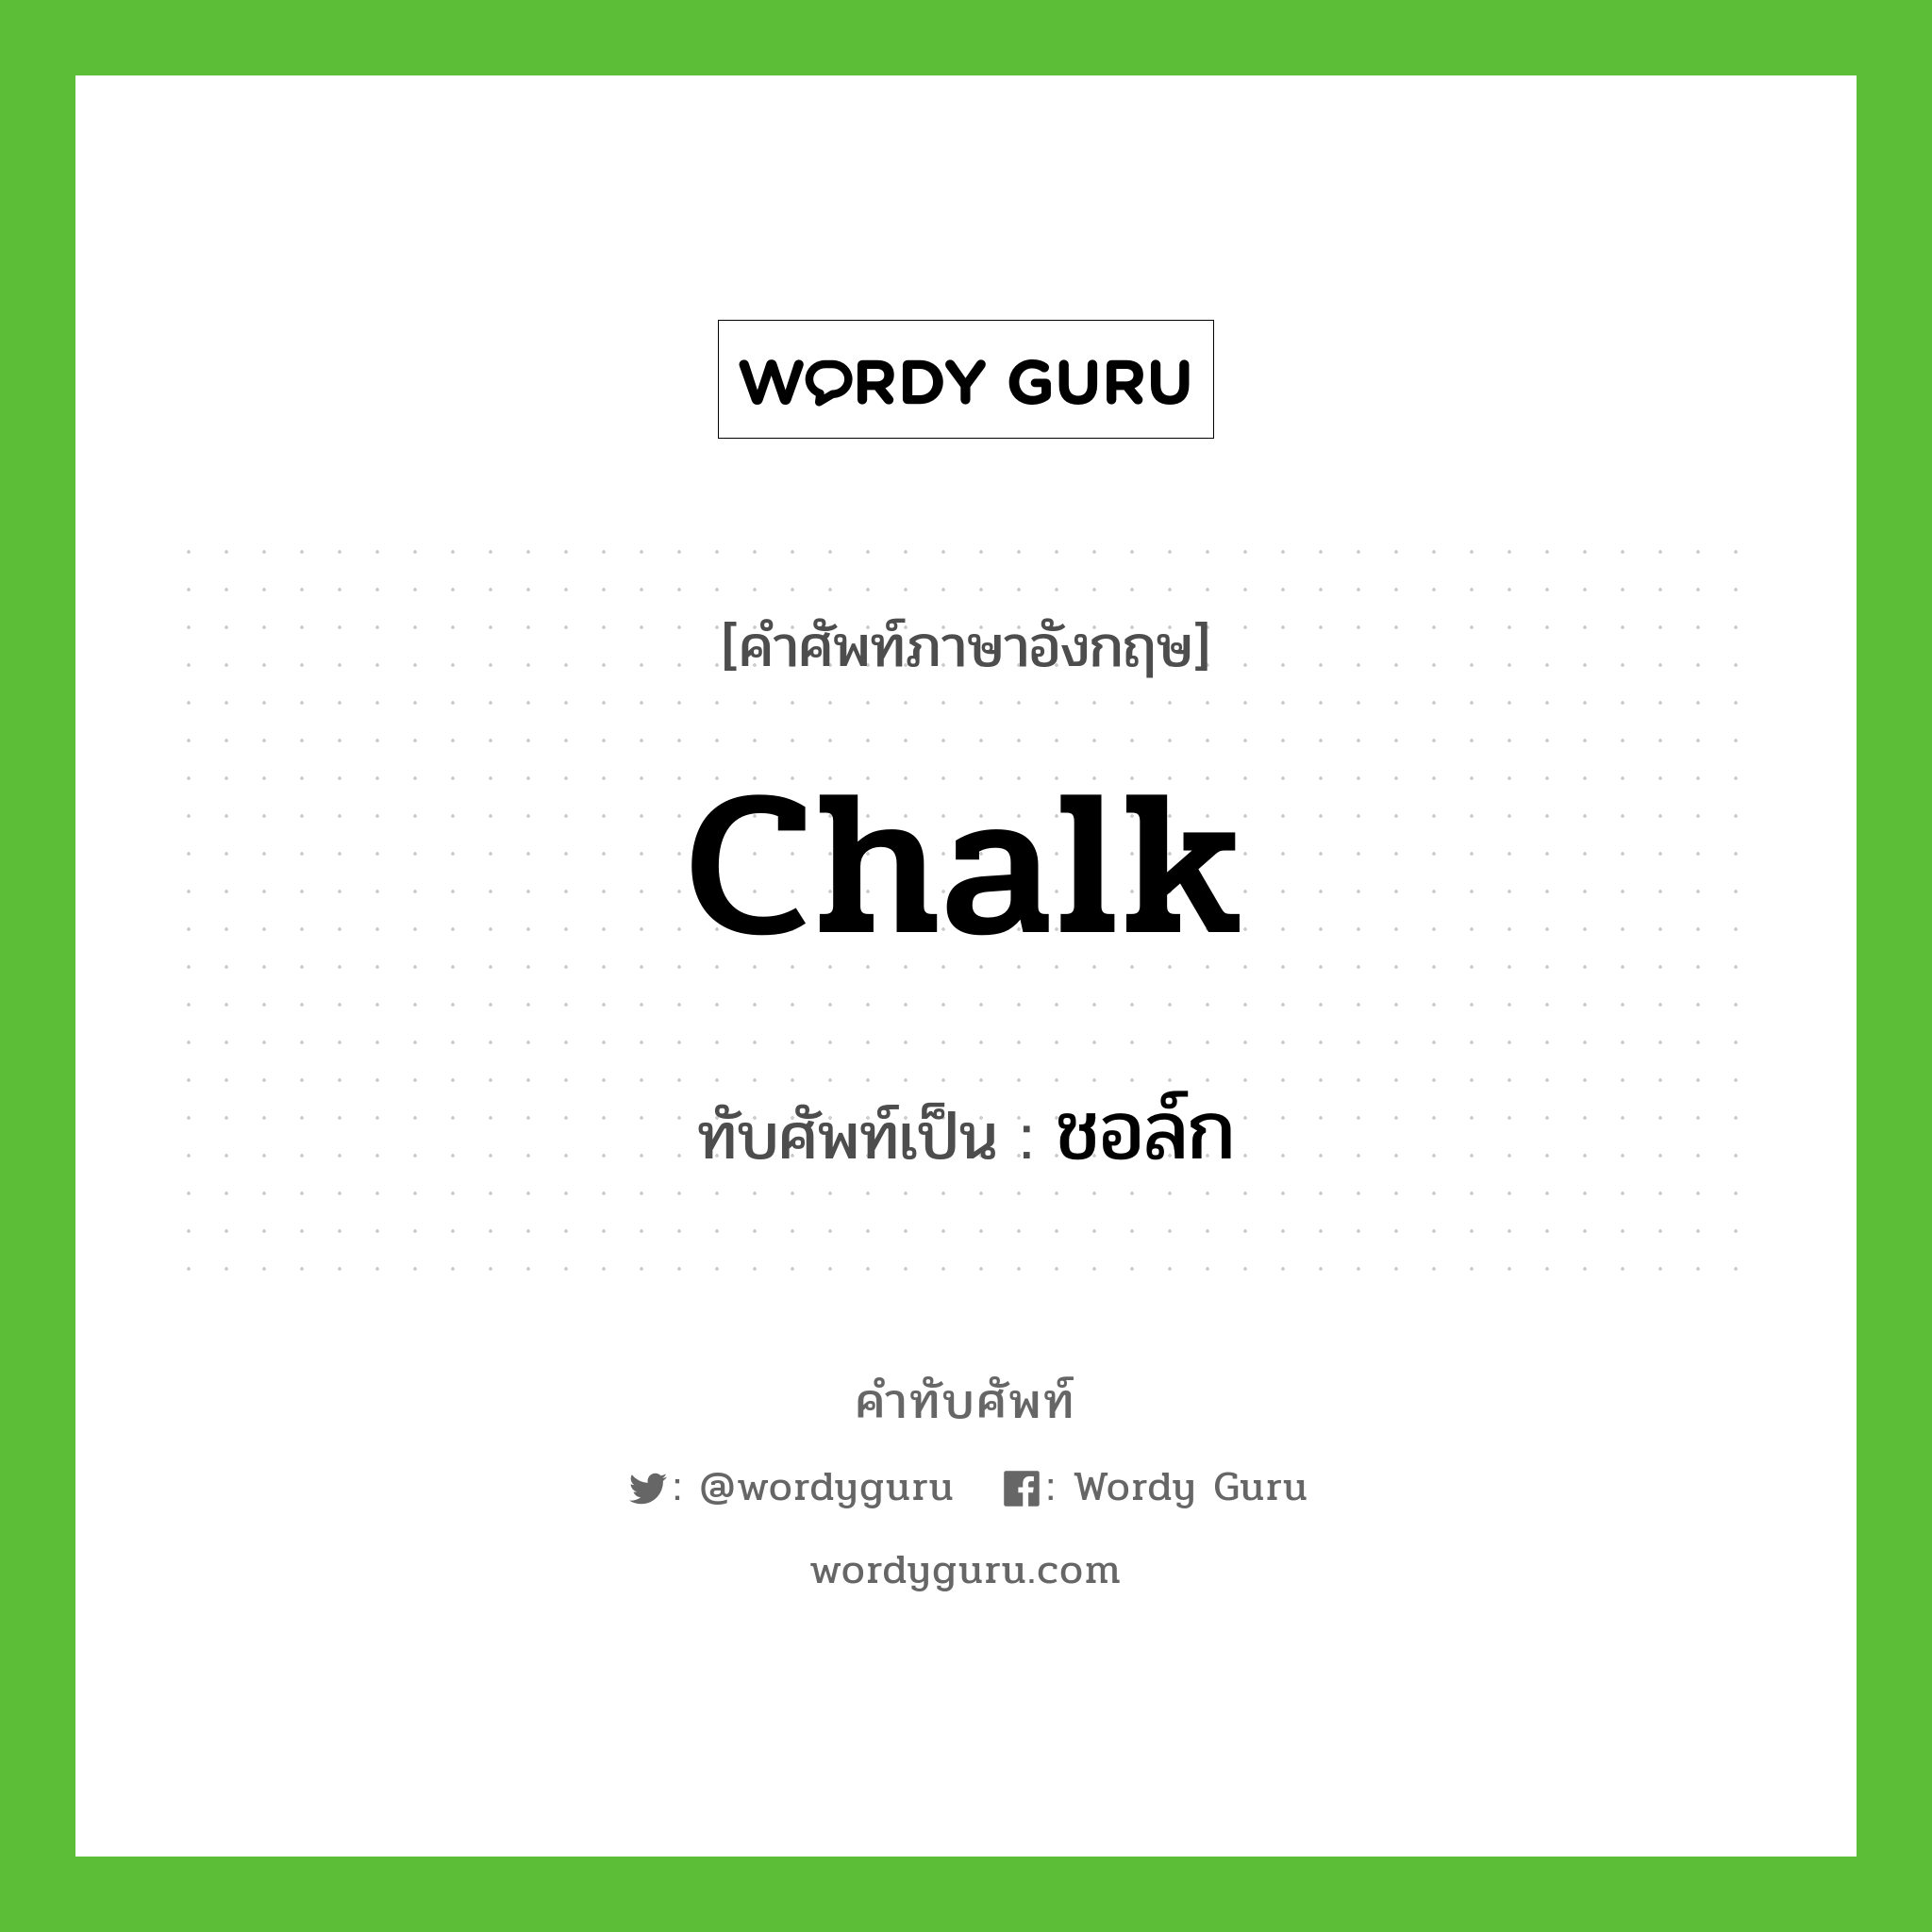 chalk เขียนเป็นคำไทยว่าอะไร?, คำศัพท์ภาษาอังกฤษ chalk ทับศัพท์เป็น ชอล์ก